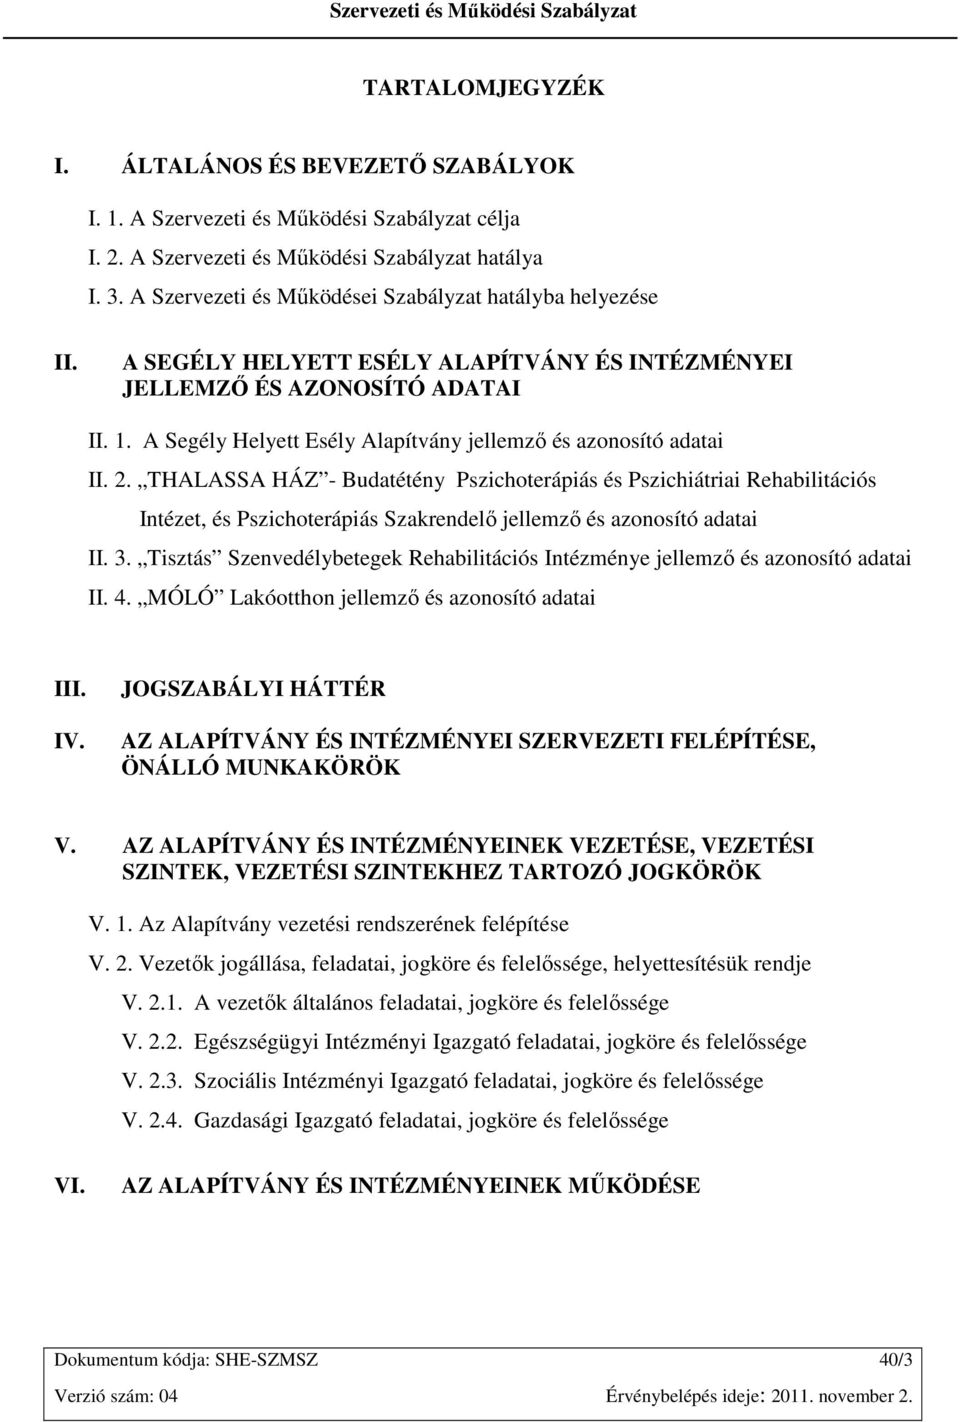 A Segély Helyett Esély Alapítvány jellemzı és azonosító adatai II. 2.